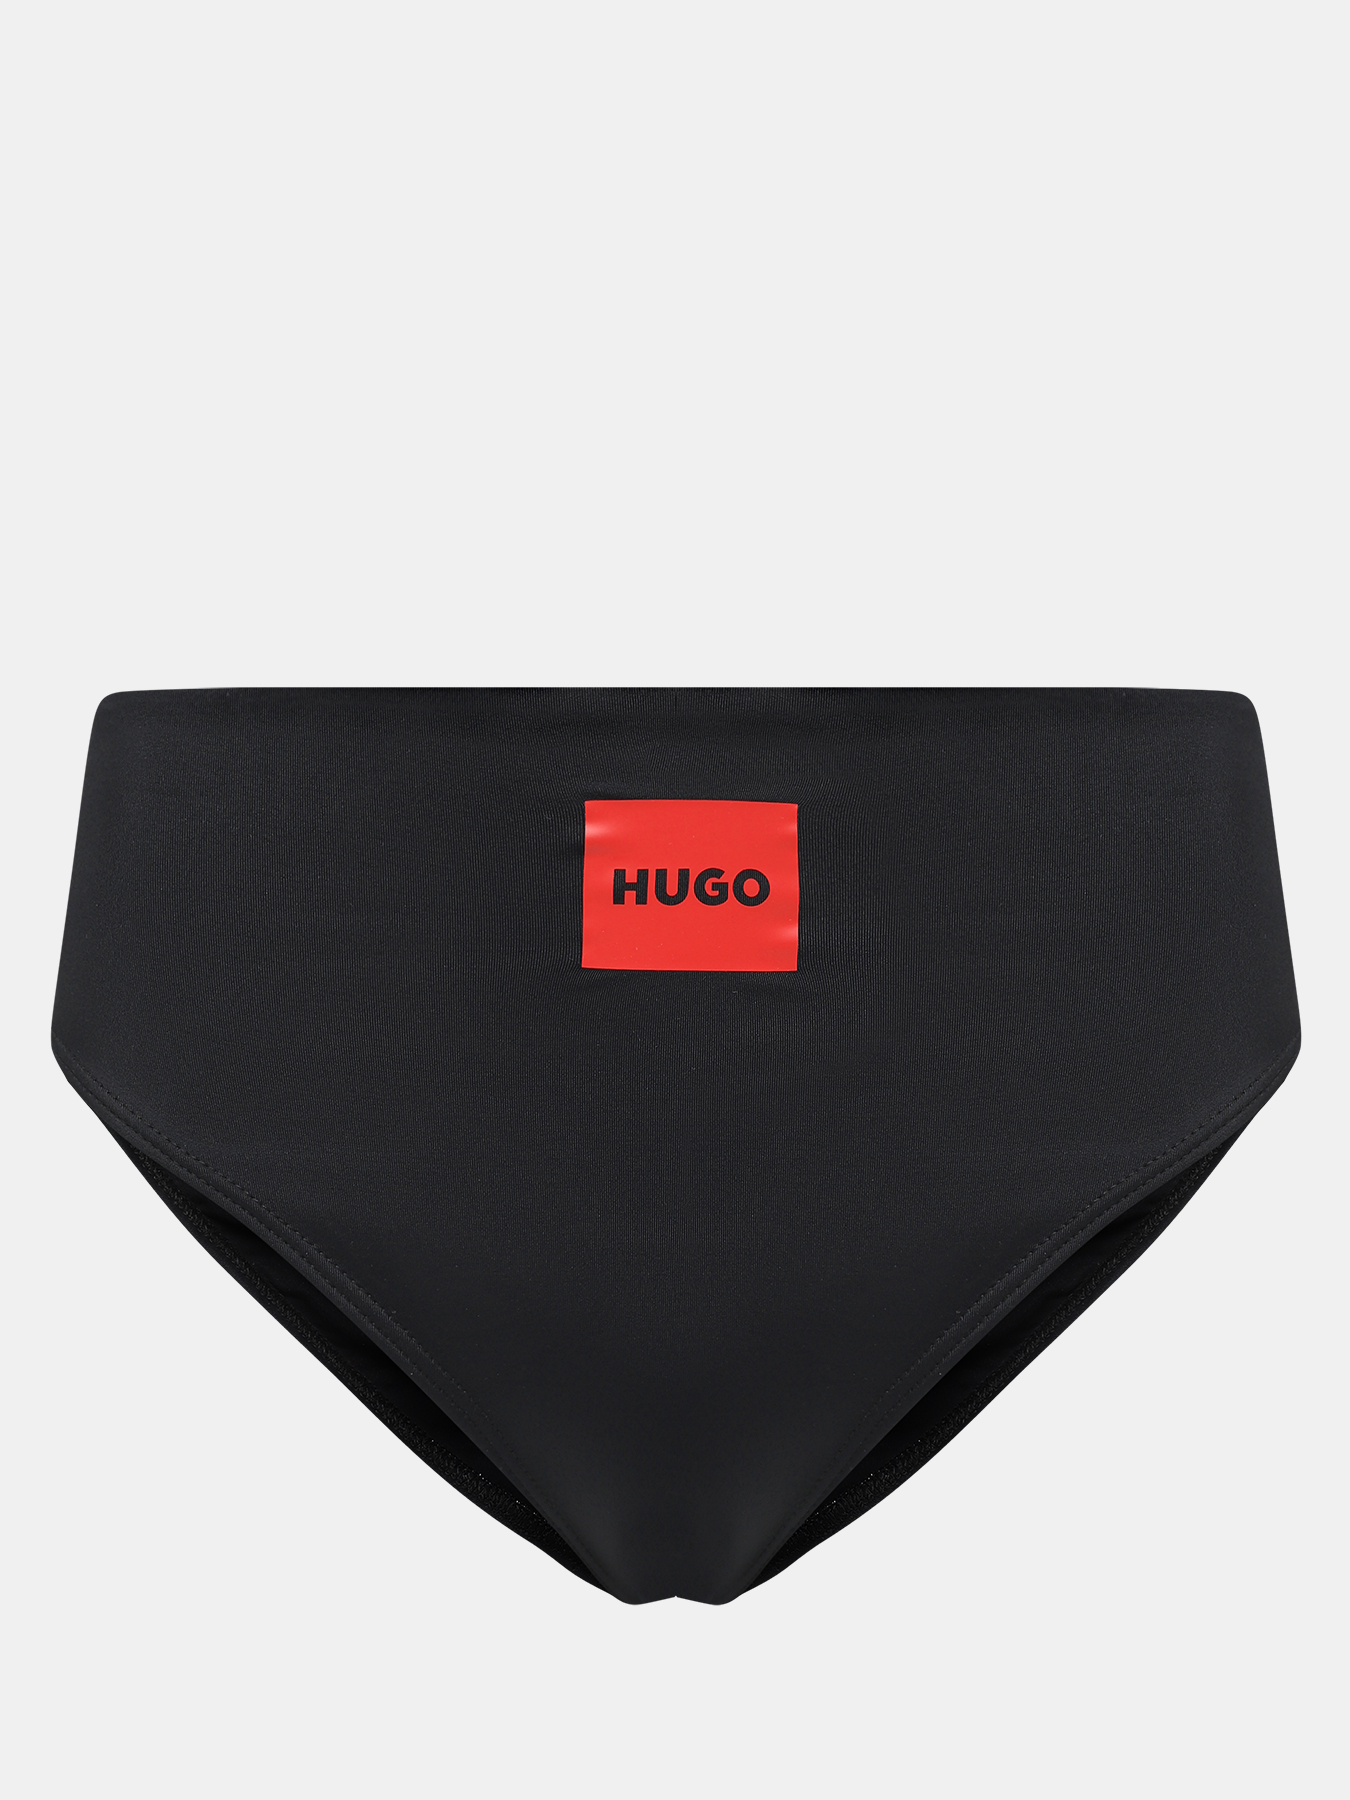 Плавки купальные Red Label HUGO 436062-042, цвет черный, размер 42-44